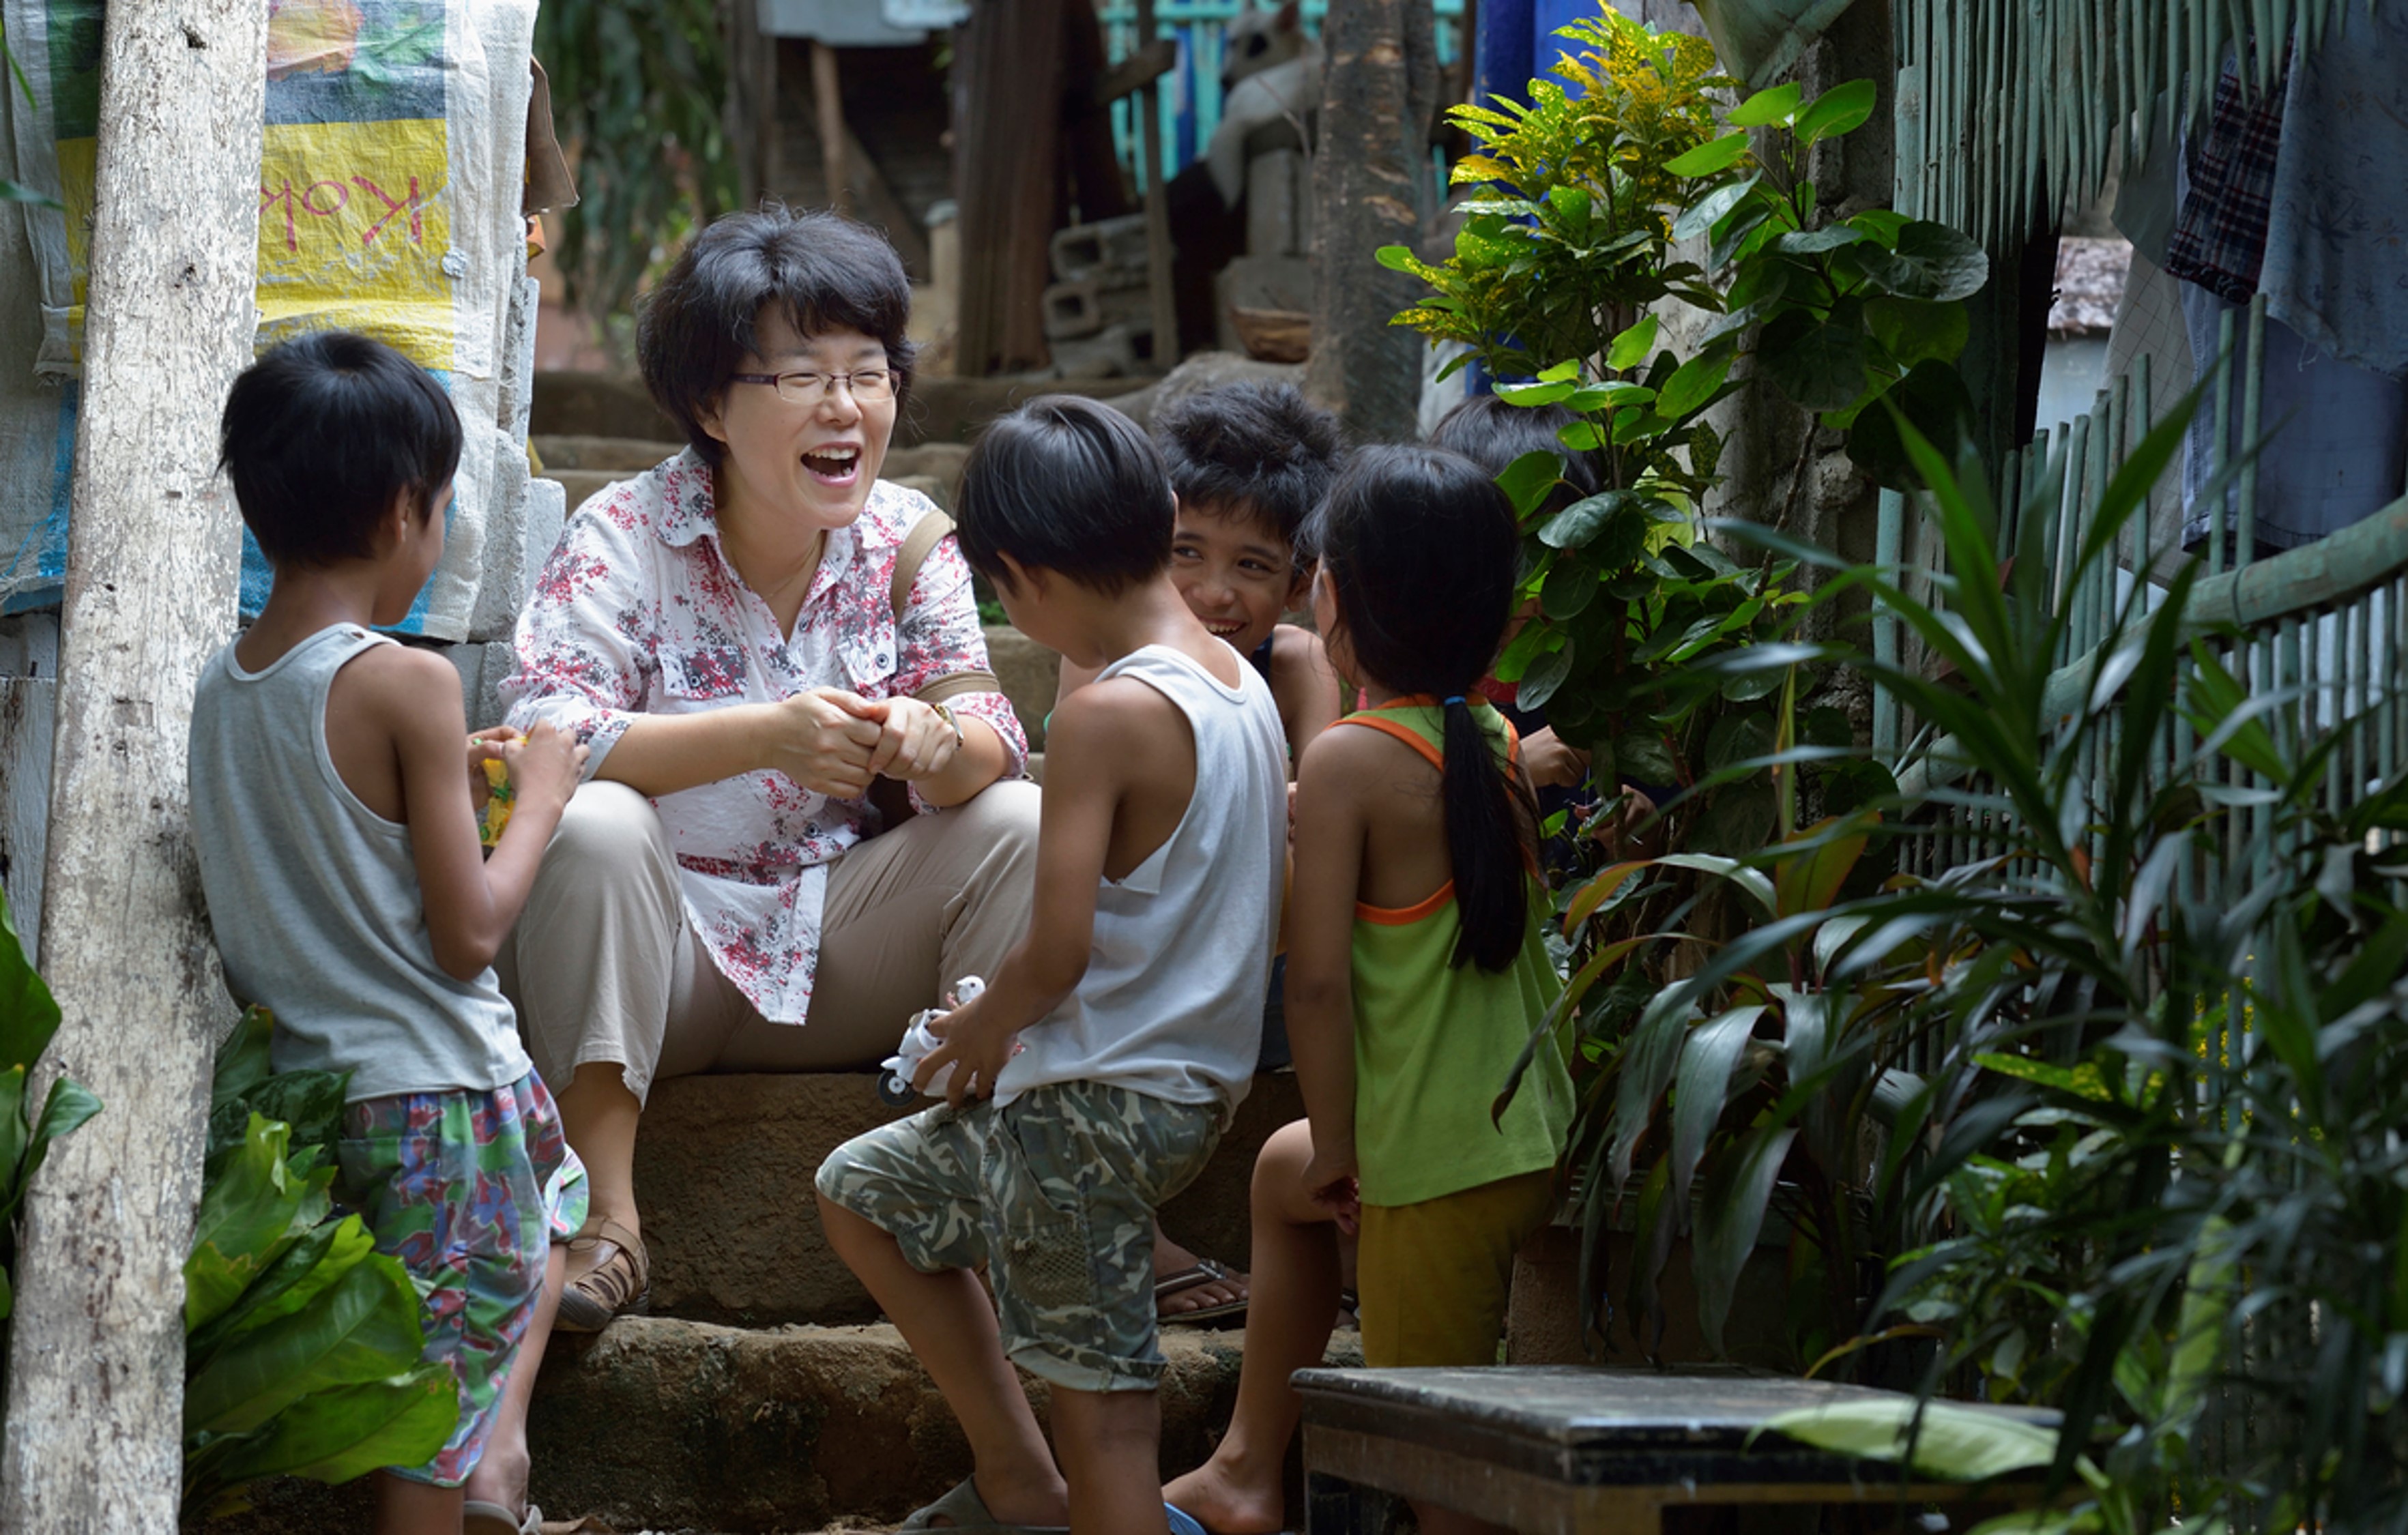 도시빈민 지역으로 보건사역을 나간 김은하 목사가 아이들과 이야기를 하고 있다. 사진 제공, 김은하 목사, 연합감리교회 세계선교부.